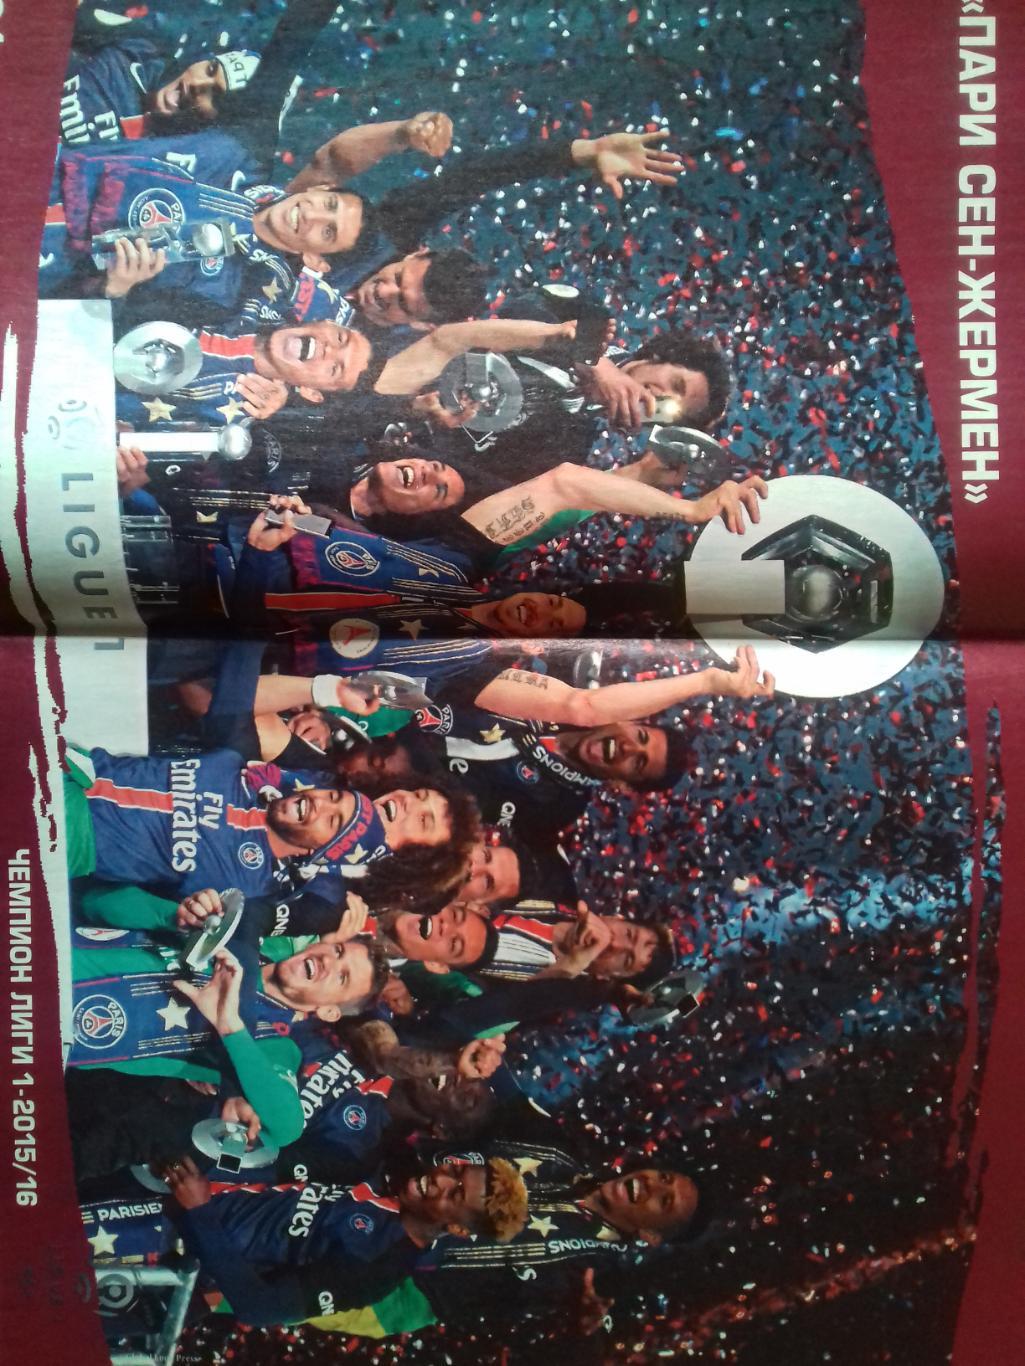 Еженедельник Футбол-хоккей №25 2016г. Есть постеры ПСЖ И сб. Уэльса